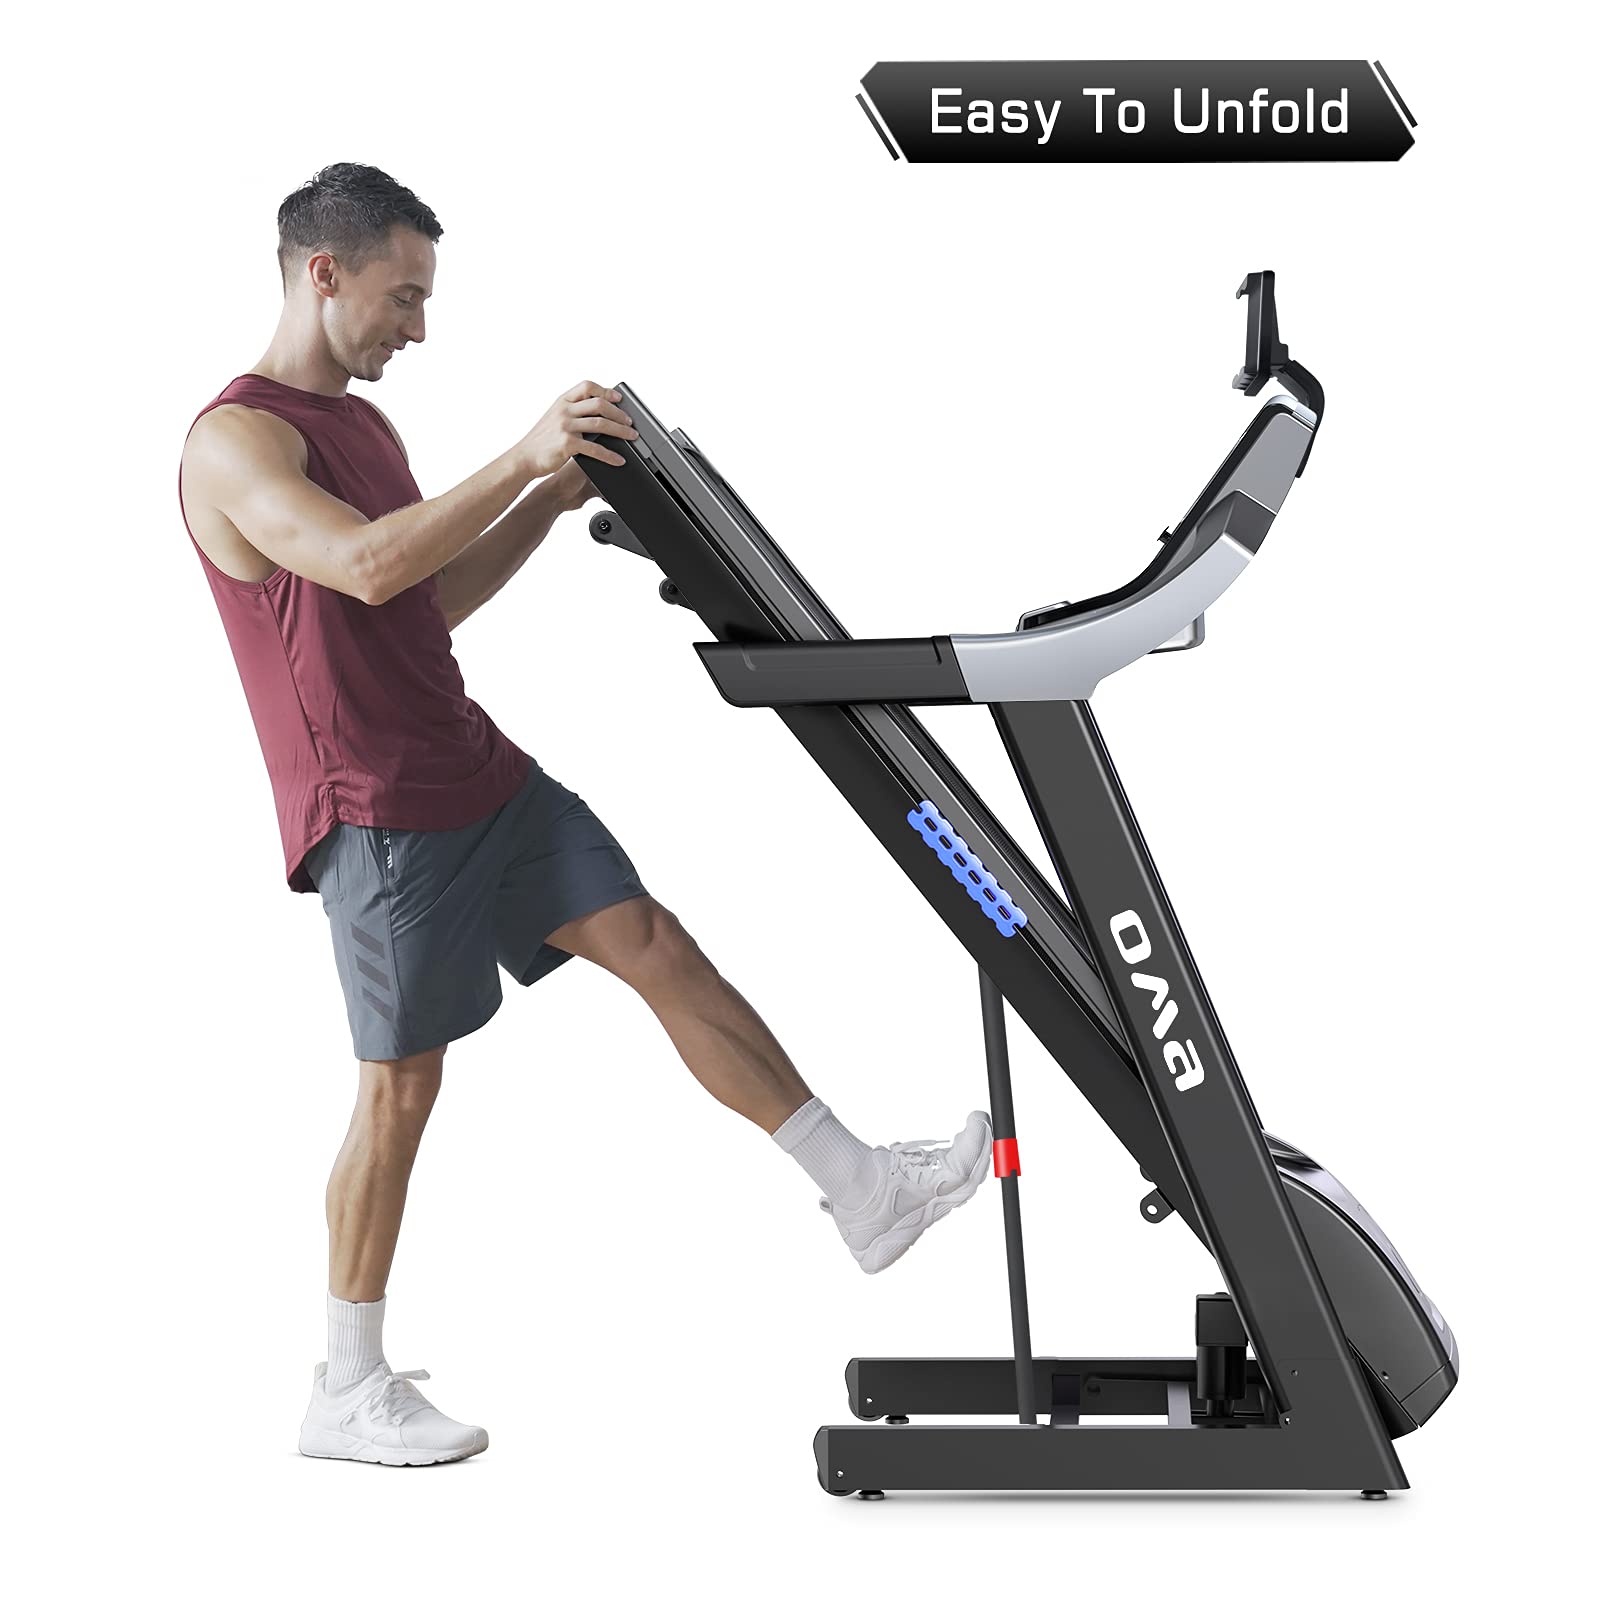 OMA Treadmill 5925CAI - 3.0 HP, 15% Incline, 300 LBS